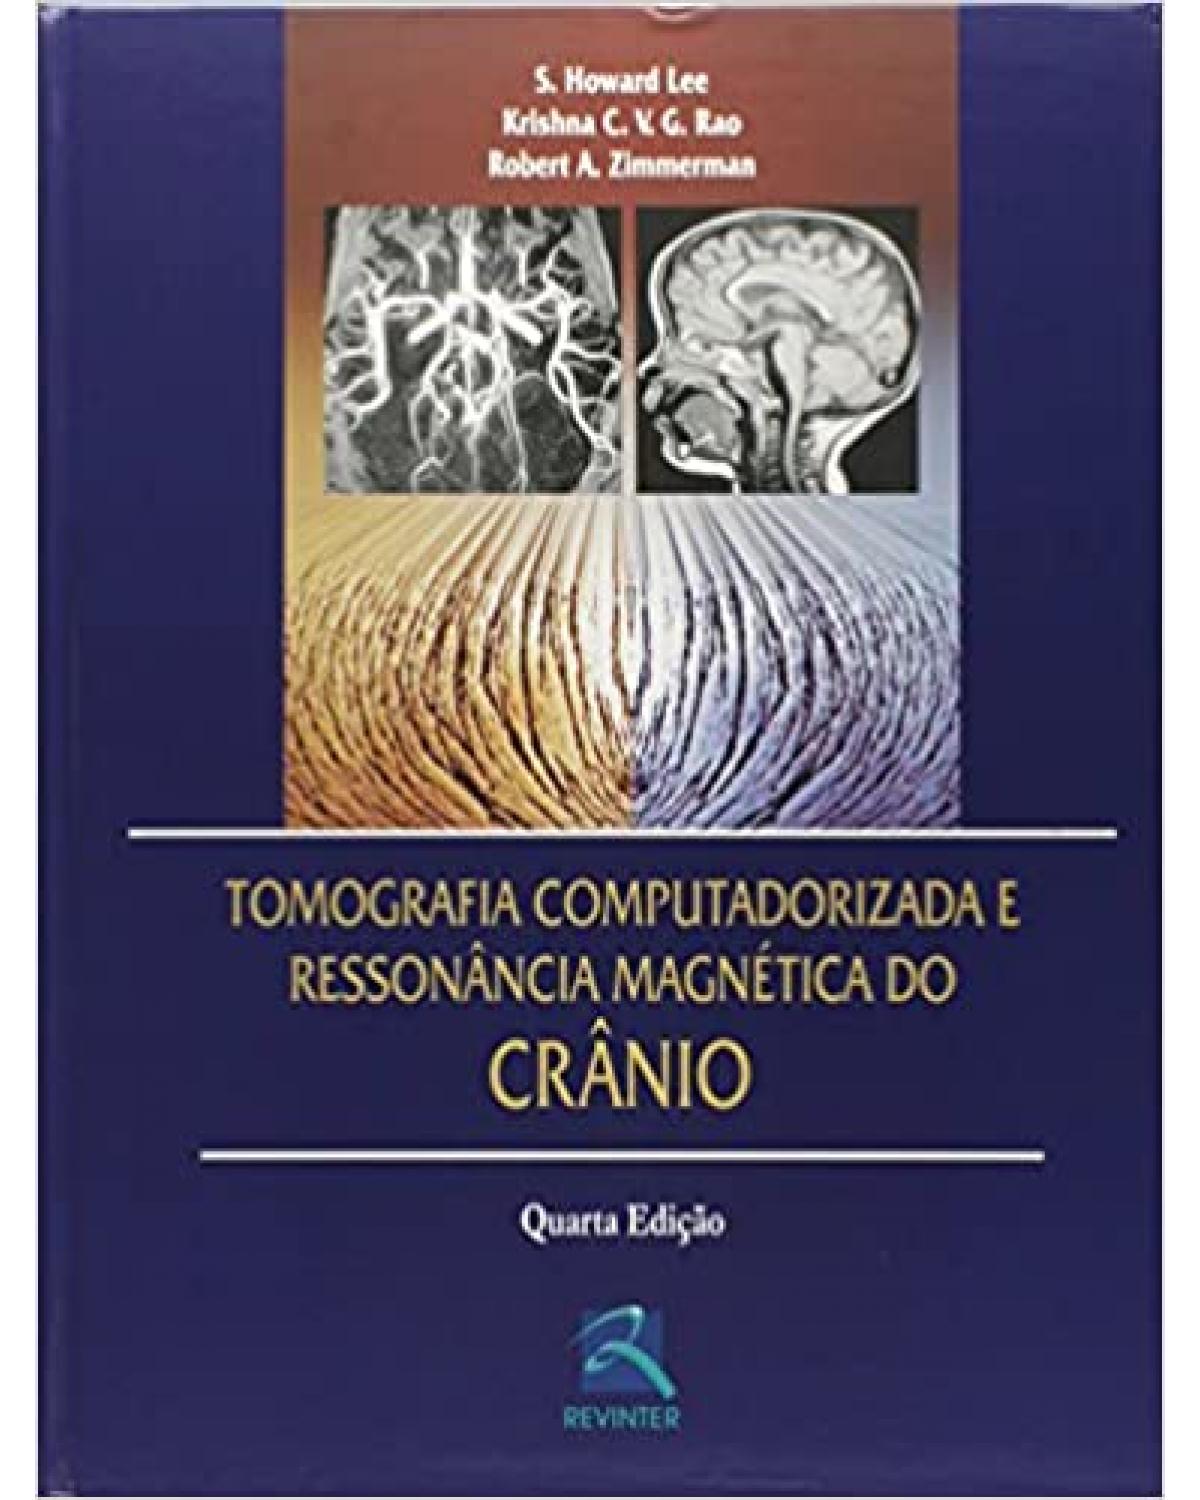 Tomografia computadorizada e ressonância magnética do crânio - 4ª Edição | 2003